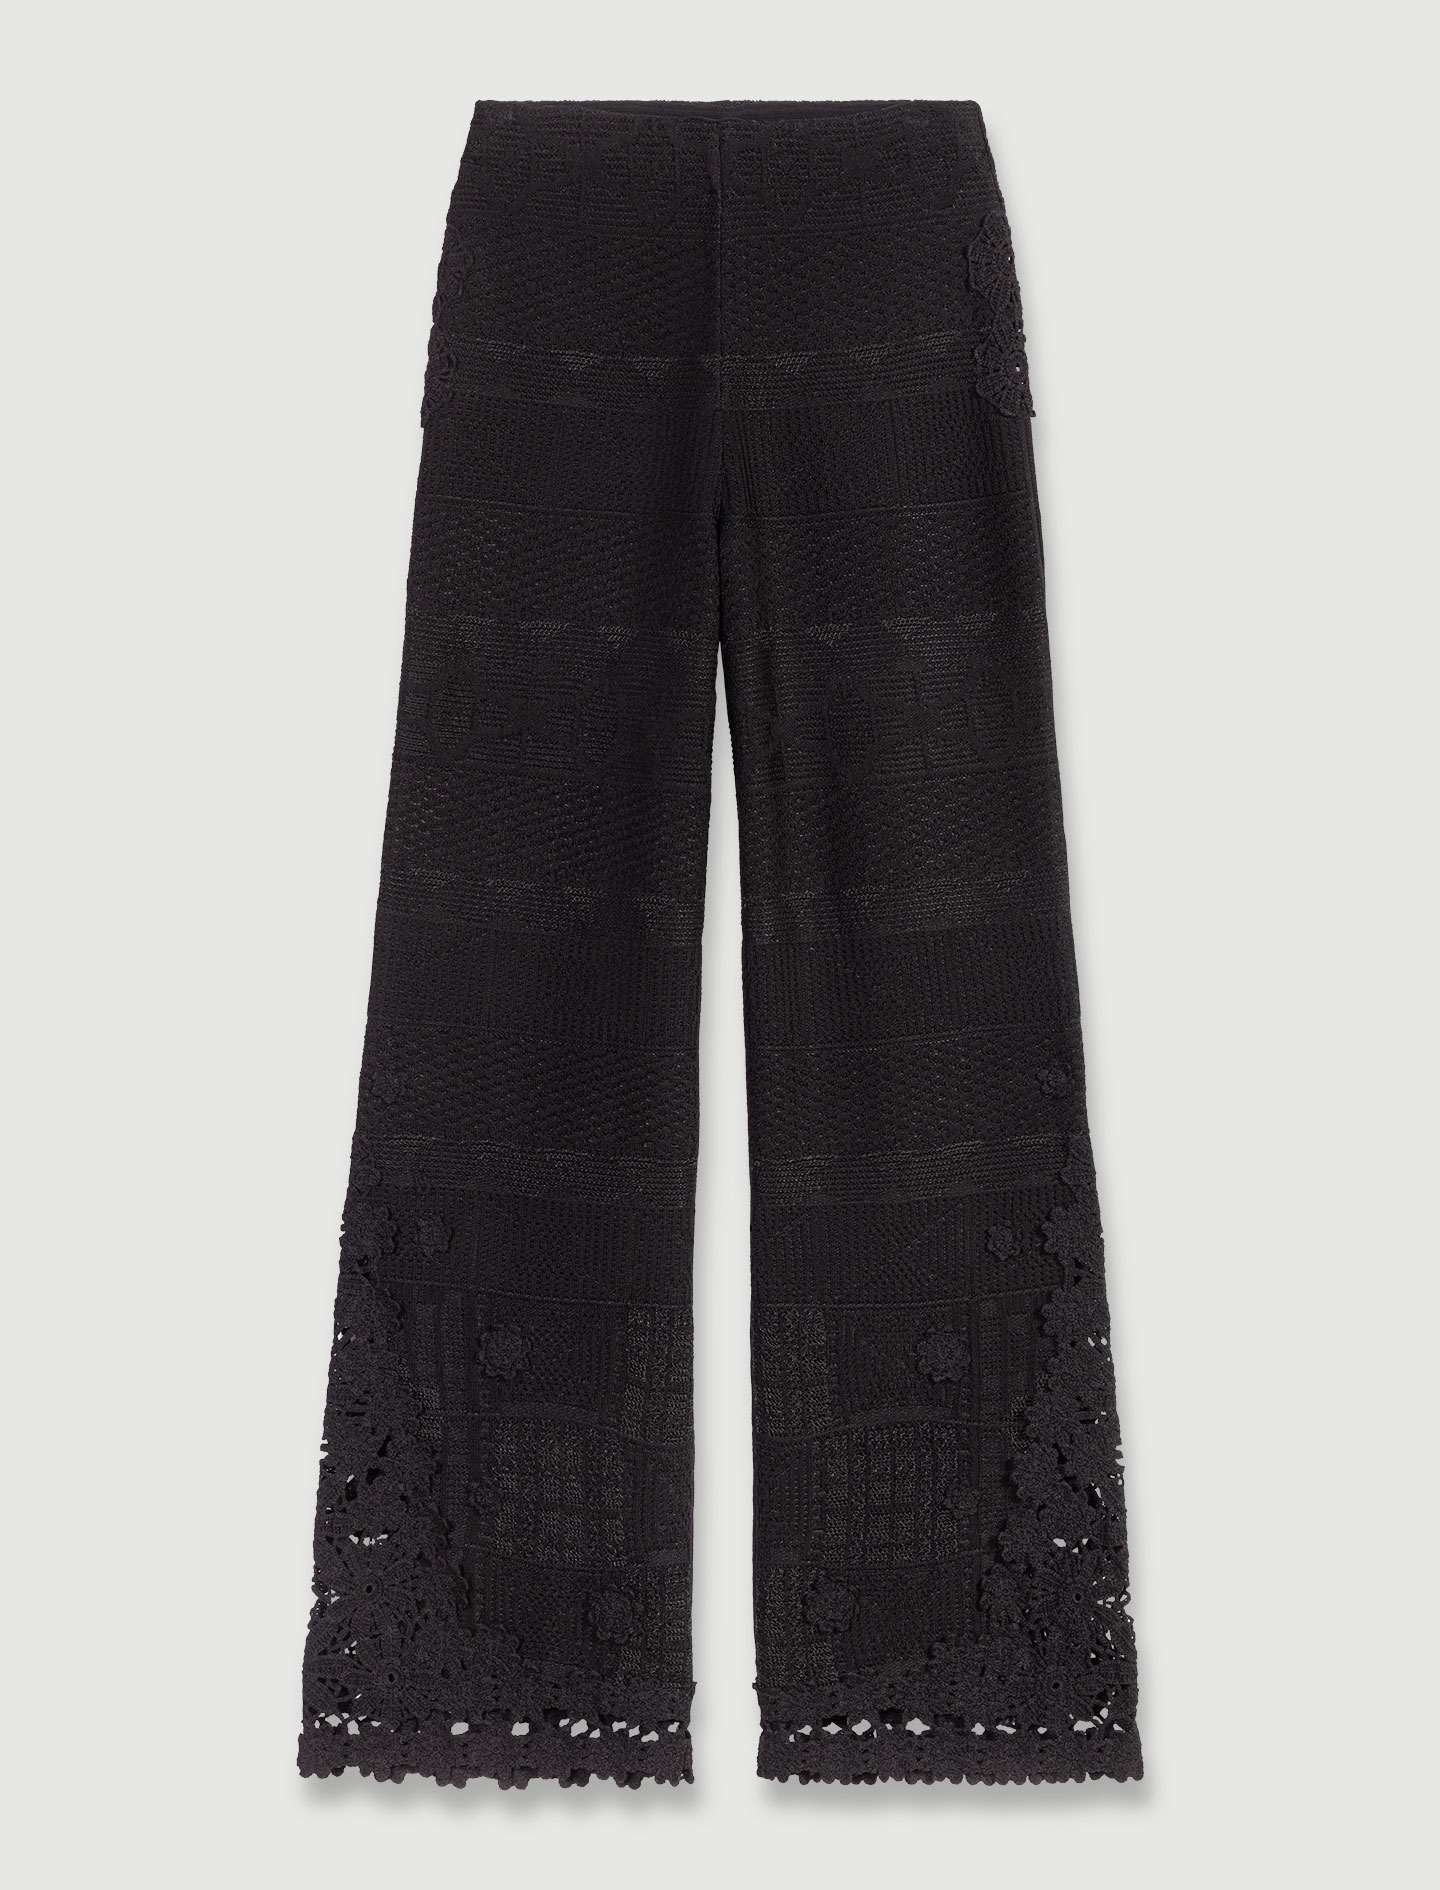 Crochet trousers - Black